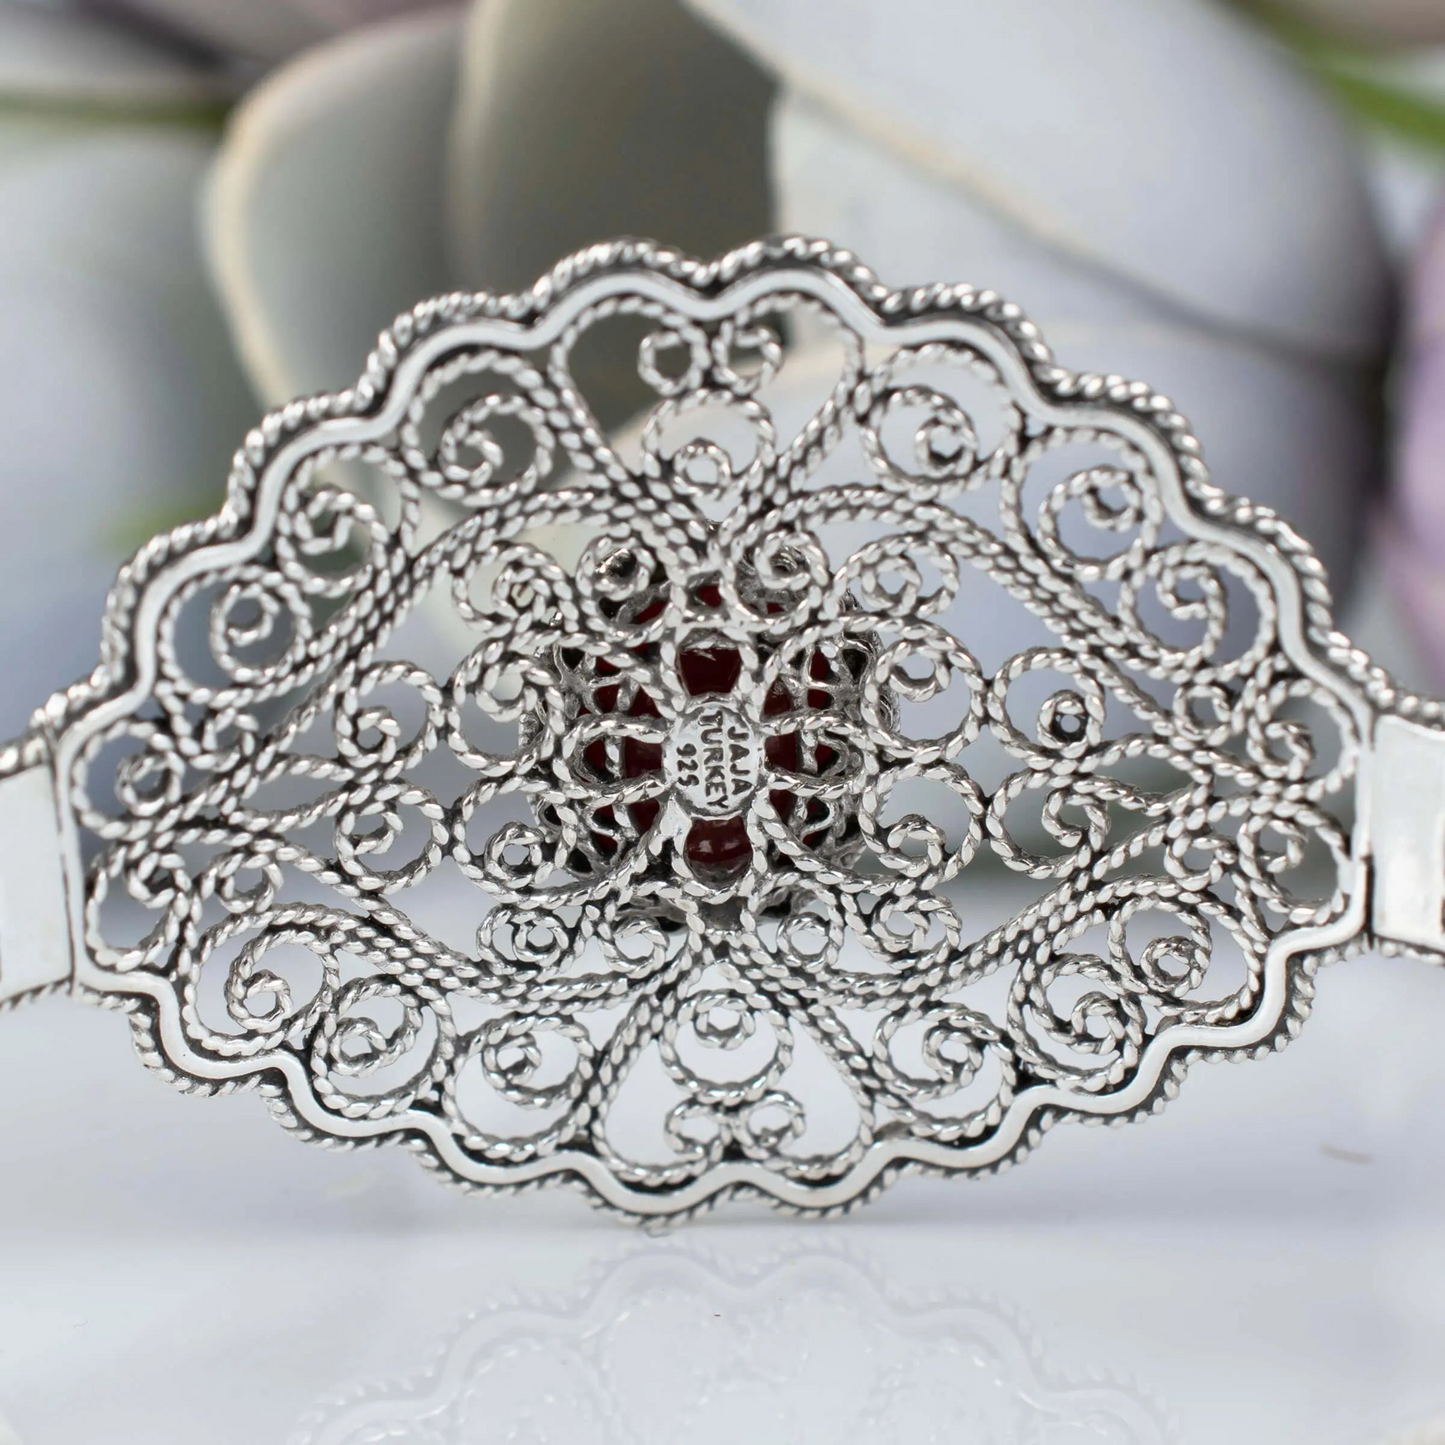 Filigree Art Carnelian Gemstone Lace Detailed Women Silver Cuff Bracelet